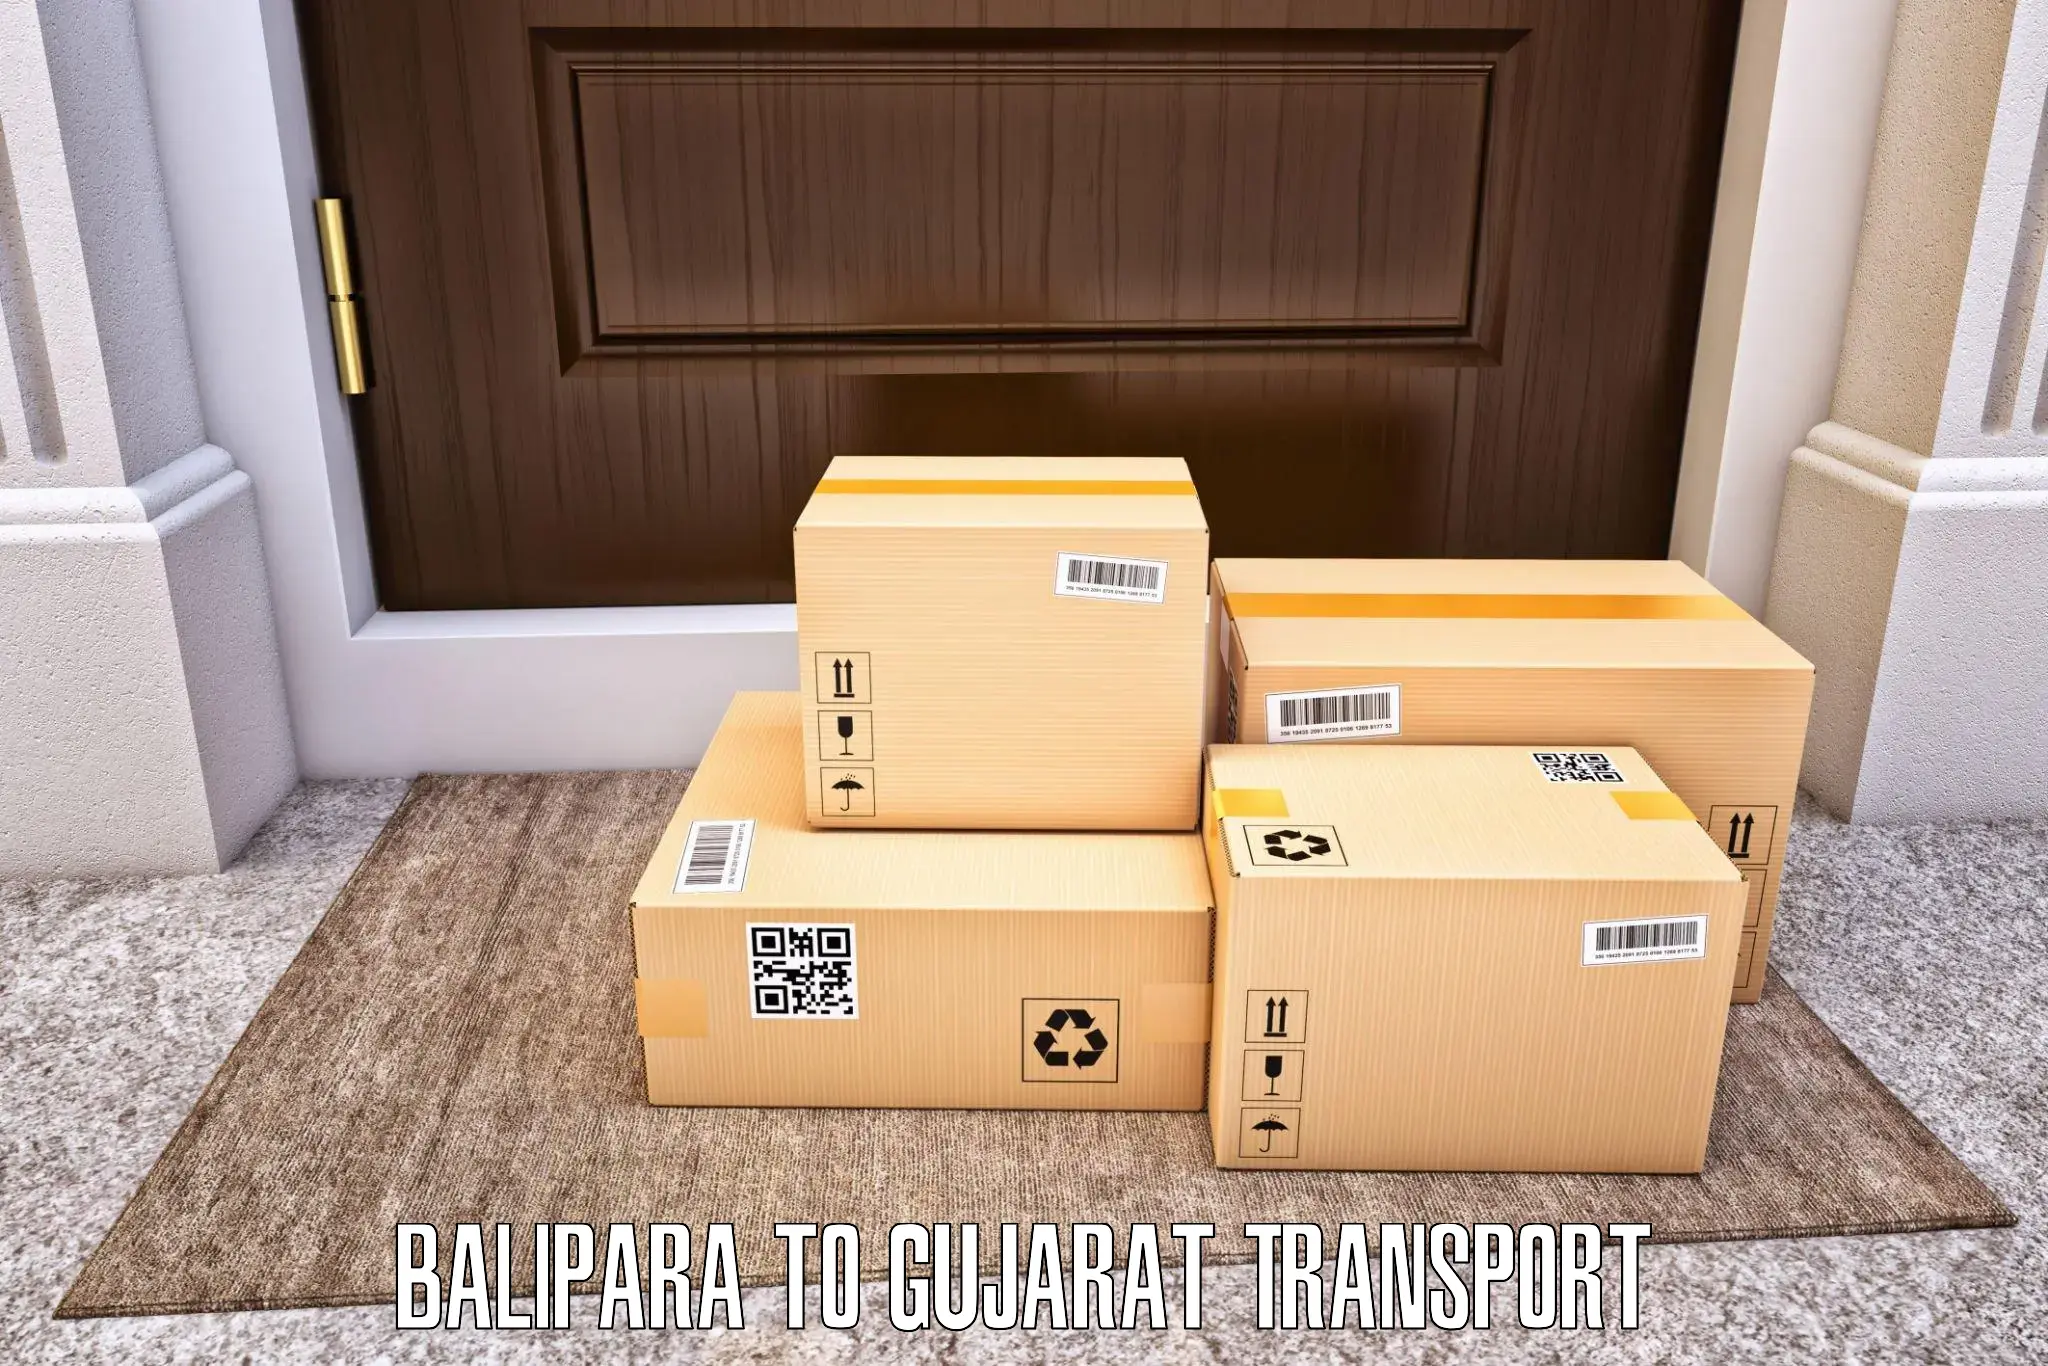 Transport in sharing Balipara to Gandhinagar